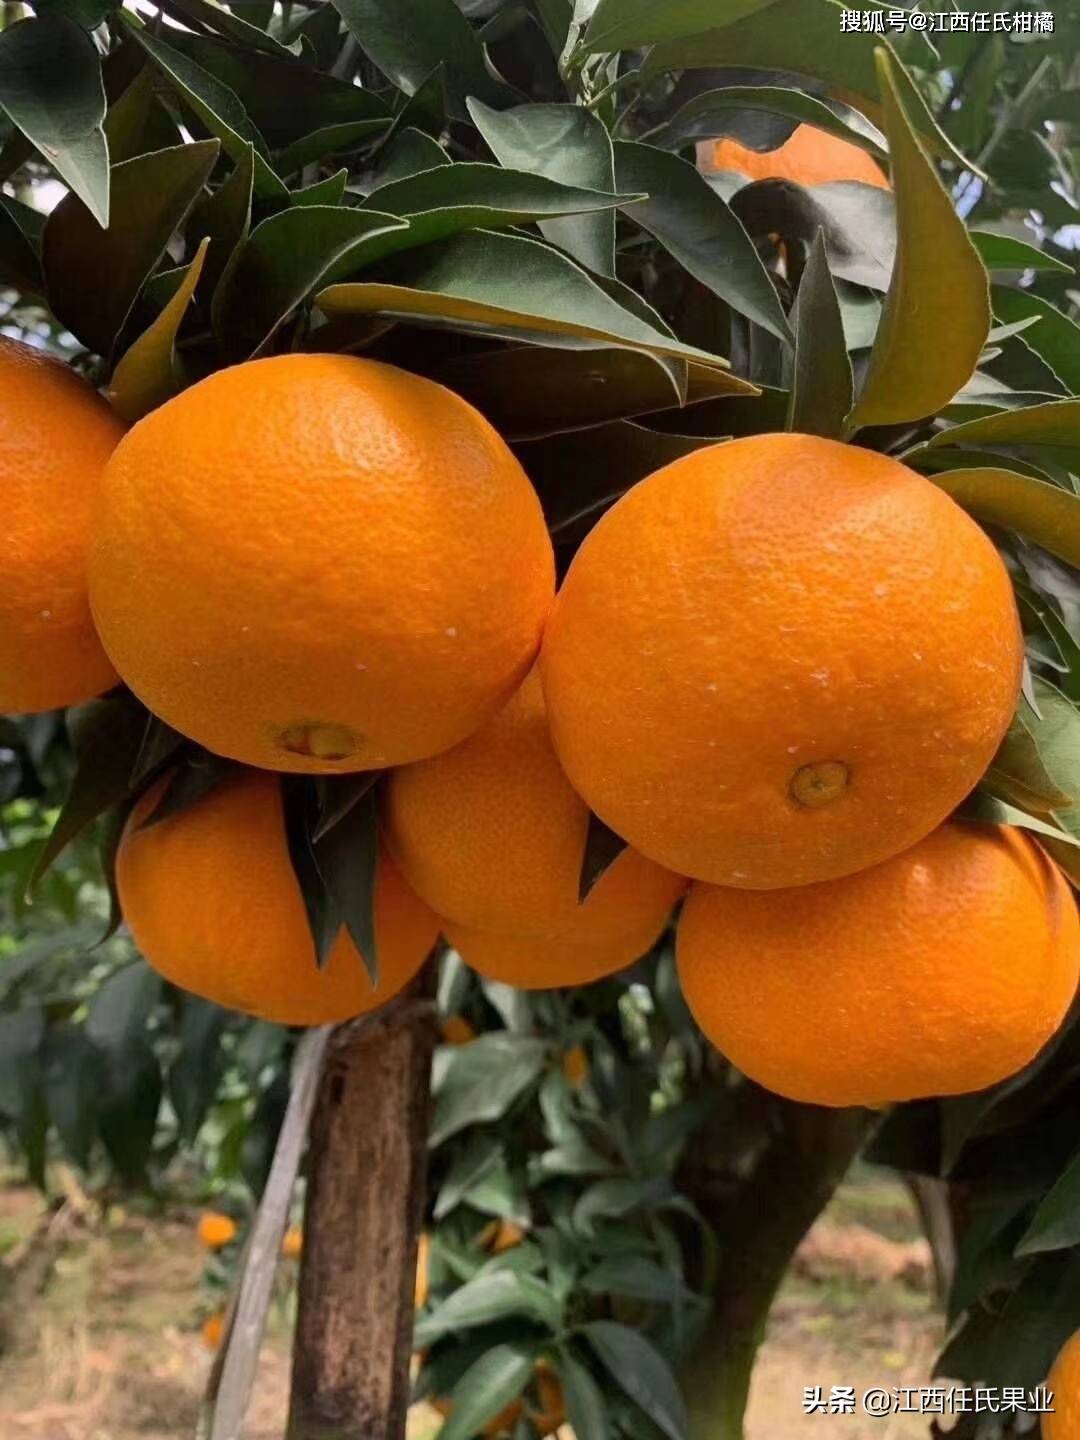 黄美人柑橘是一个晚熟柑橘品种,果皮金黄色,果面光滑,略扁圆型,无核